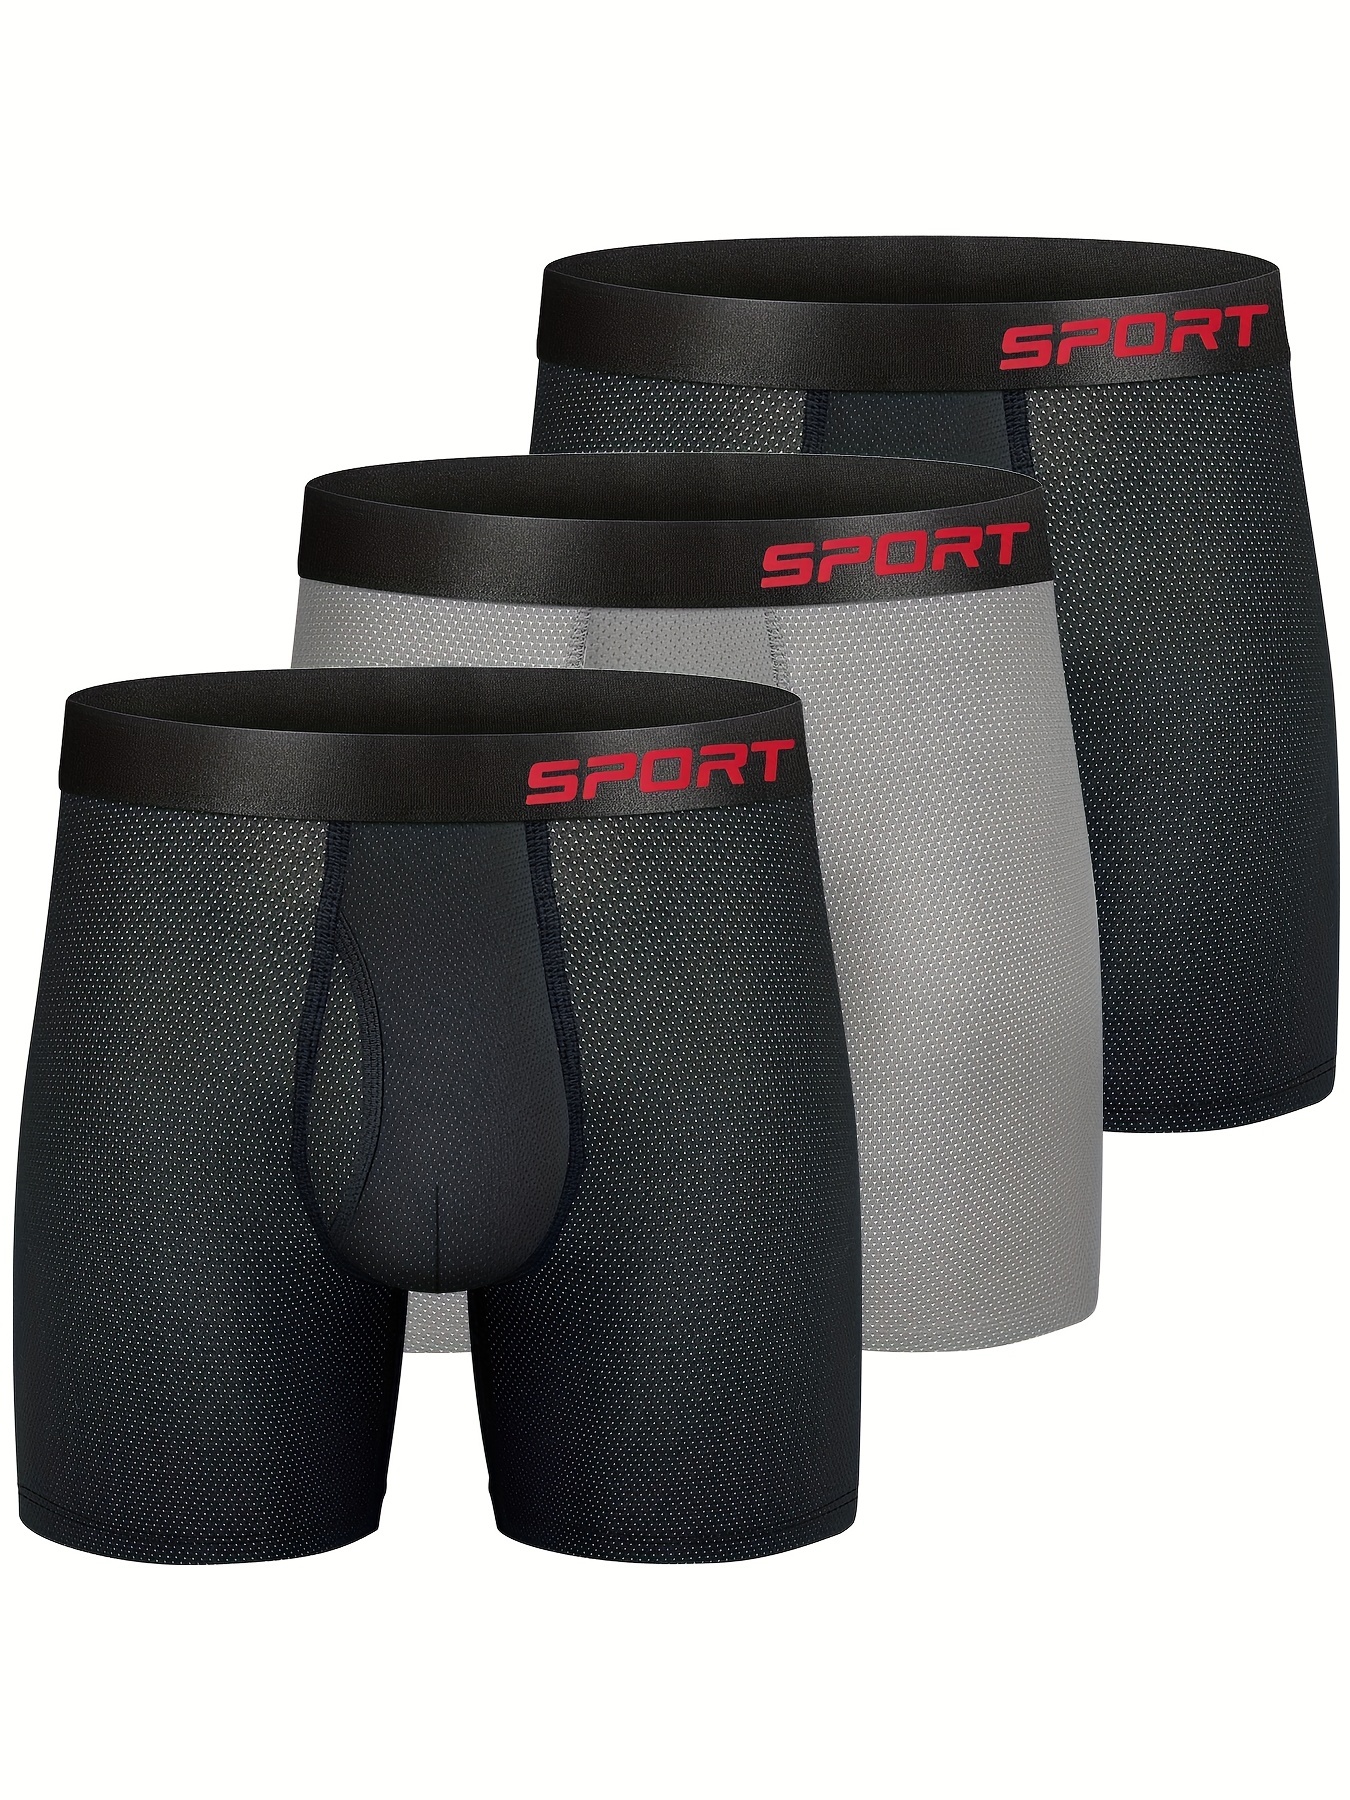 Spyder, Underwear & Socks, Spyder Boxer Briefs Black